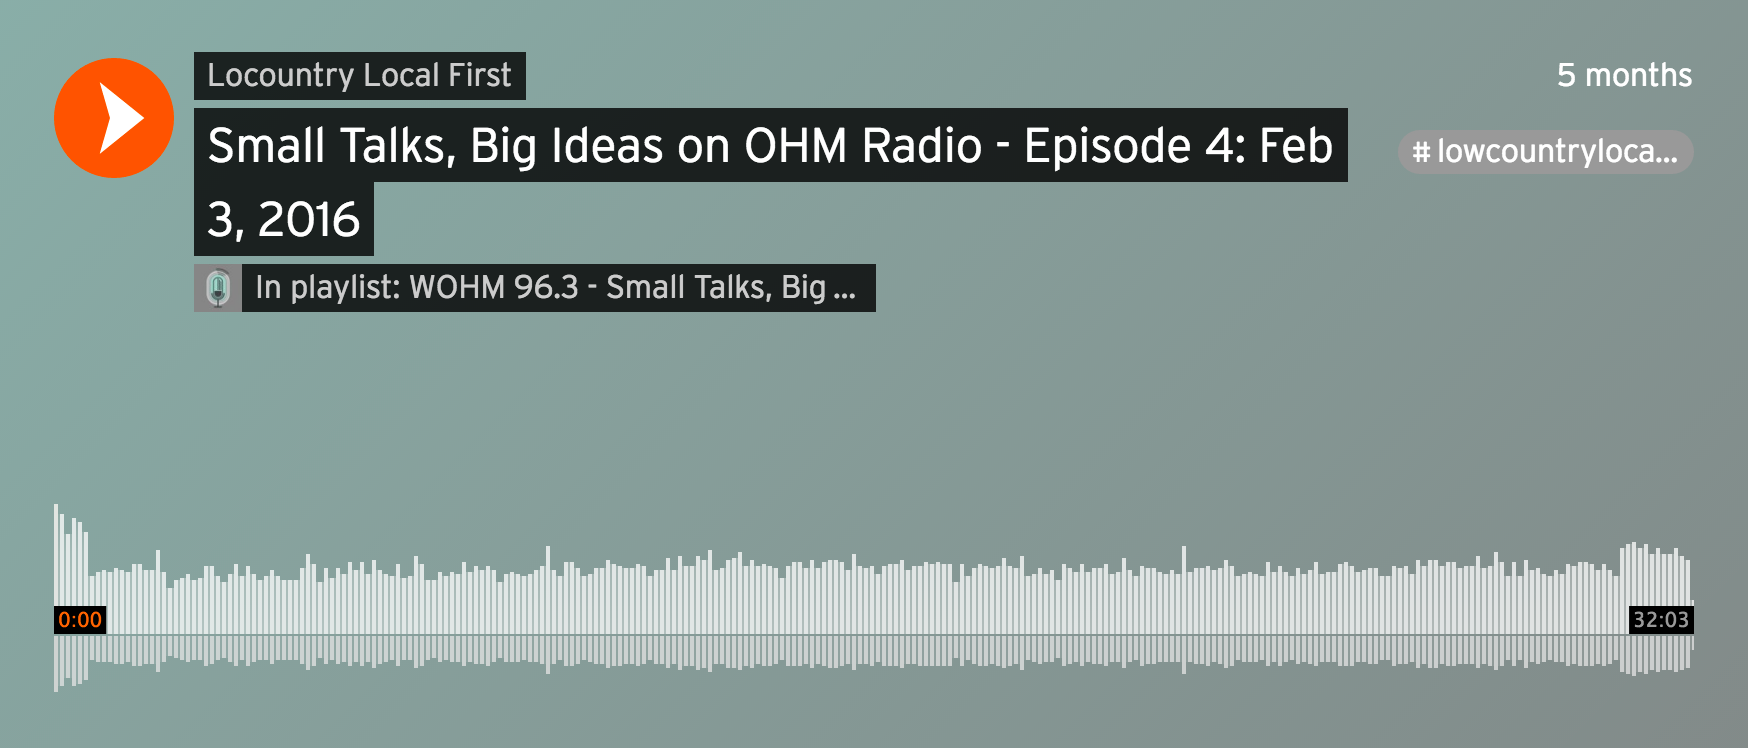 Small Talks, Big Ideas on OHM Radio